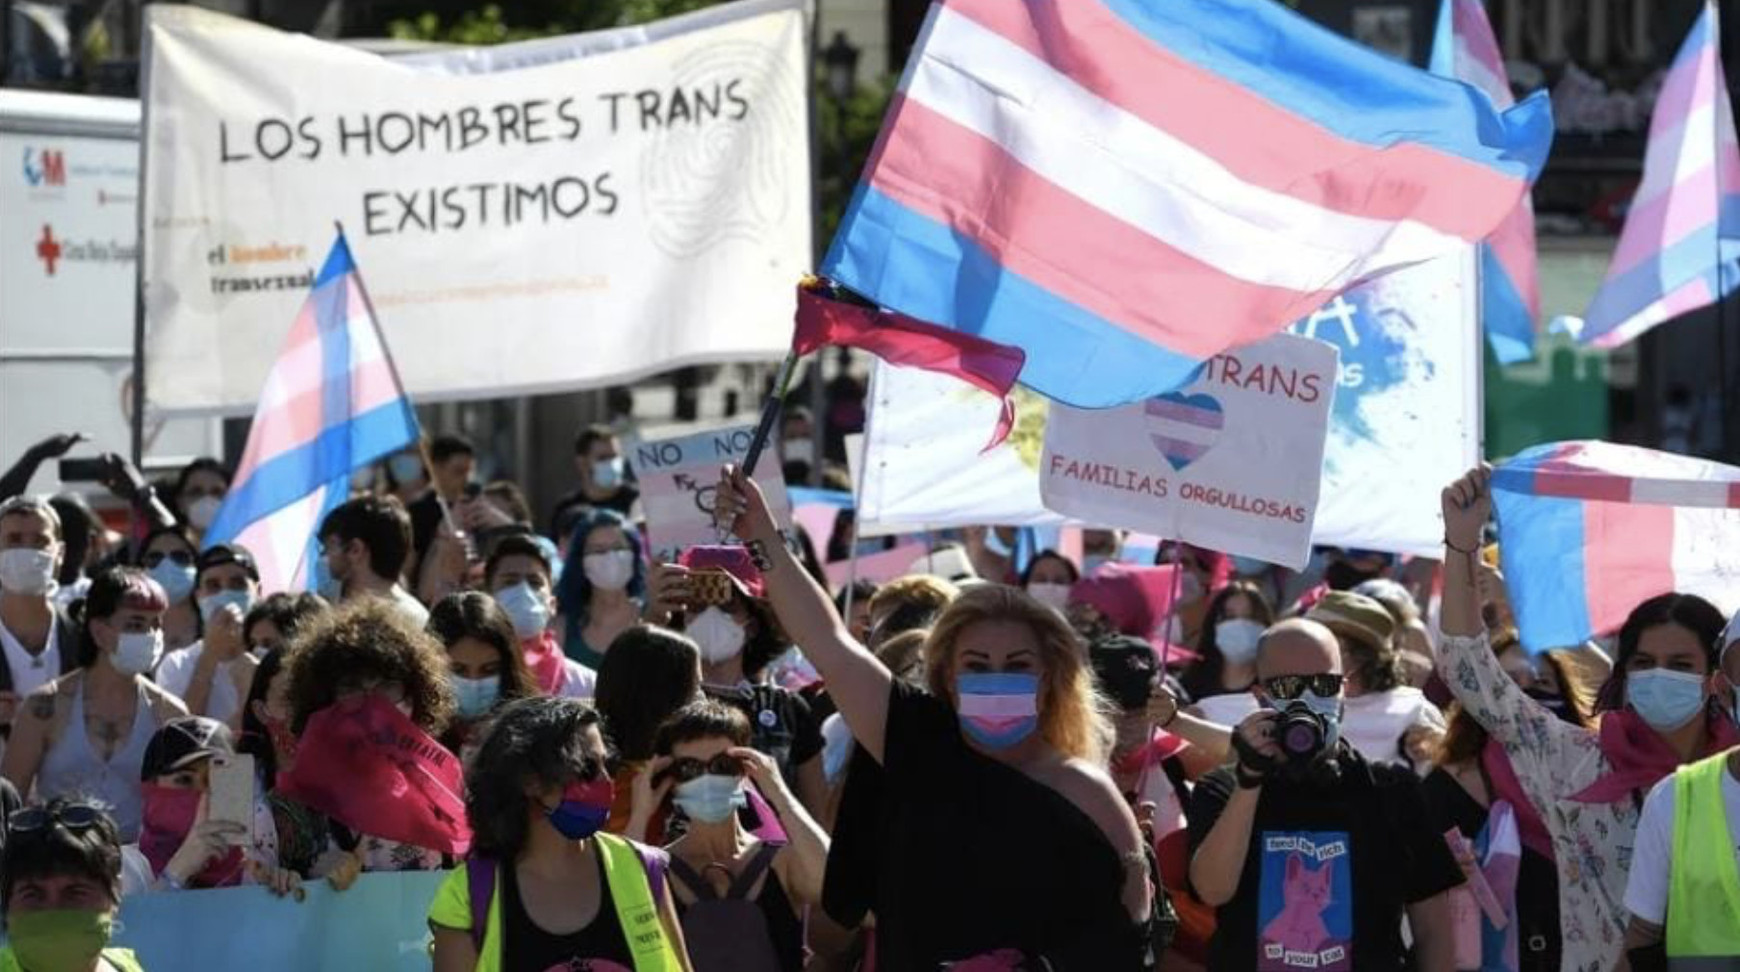 Loi transgenre en Espagne : une avancée sociale discutée en Europe - Partie 1